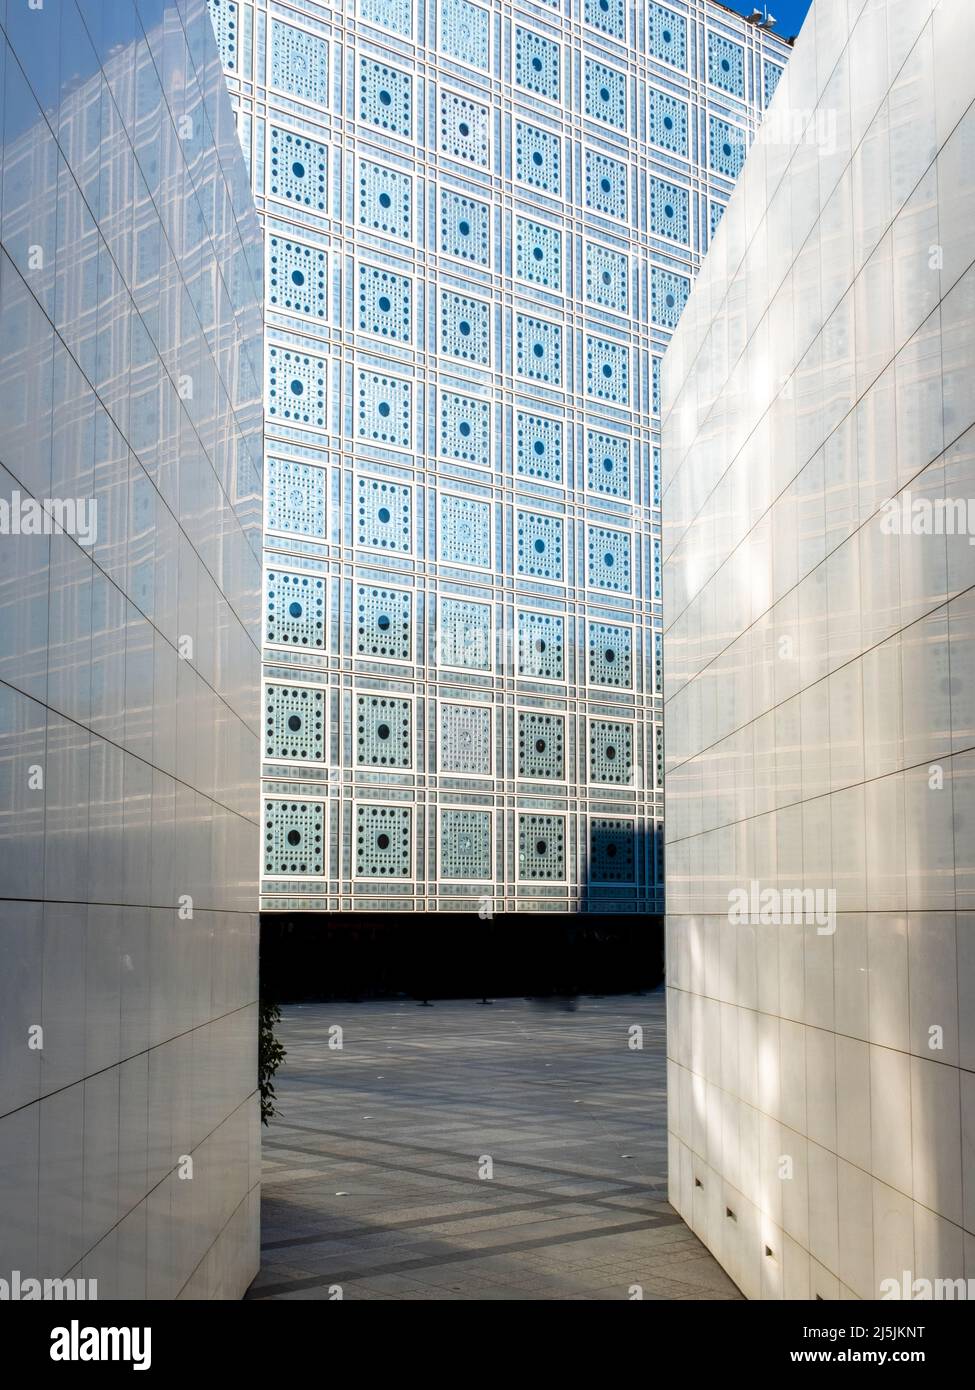 Détails de diaphragme ouverture sur les fenêtres formant mashrabiya motifs sur un musée parisien nommé institut du monde arabe Banque D'Images